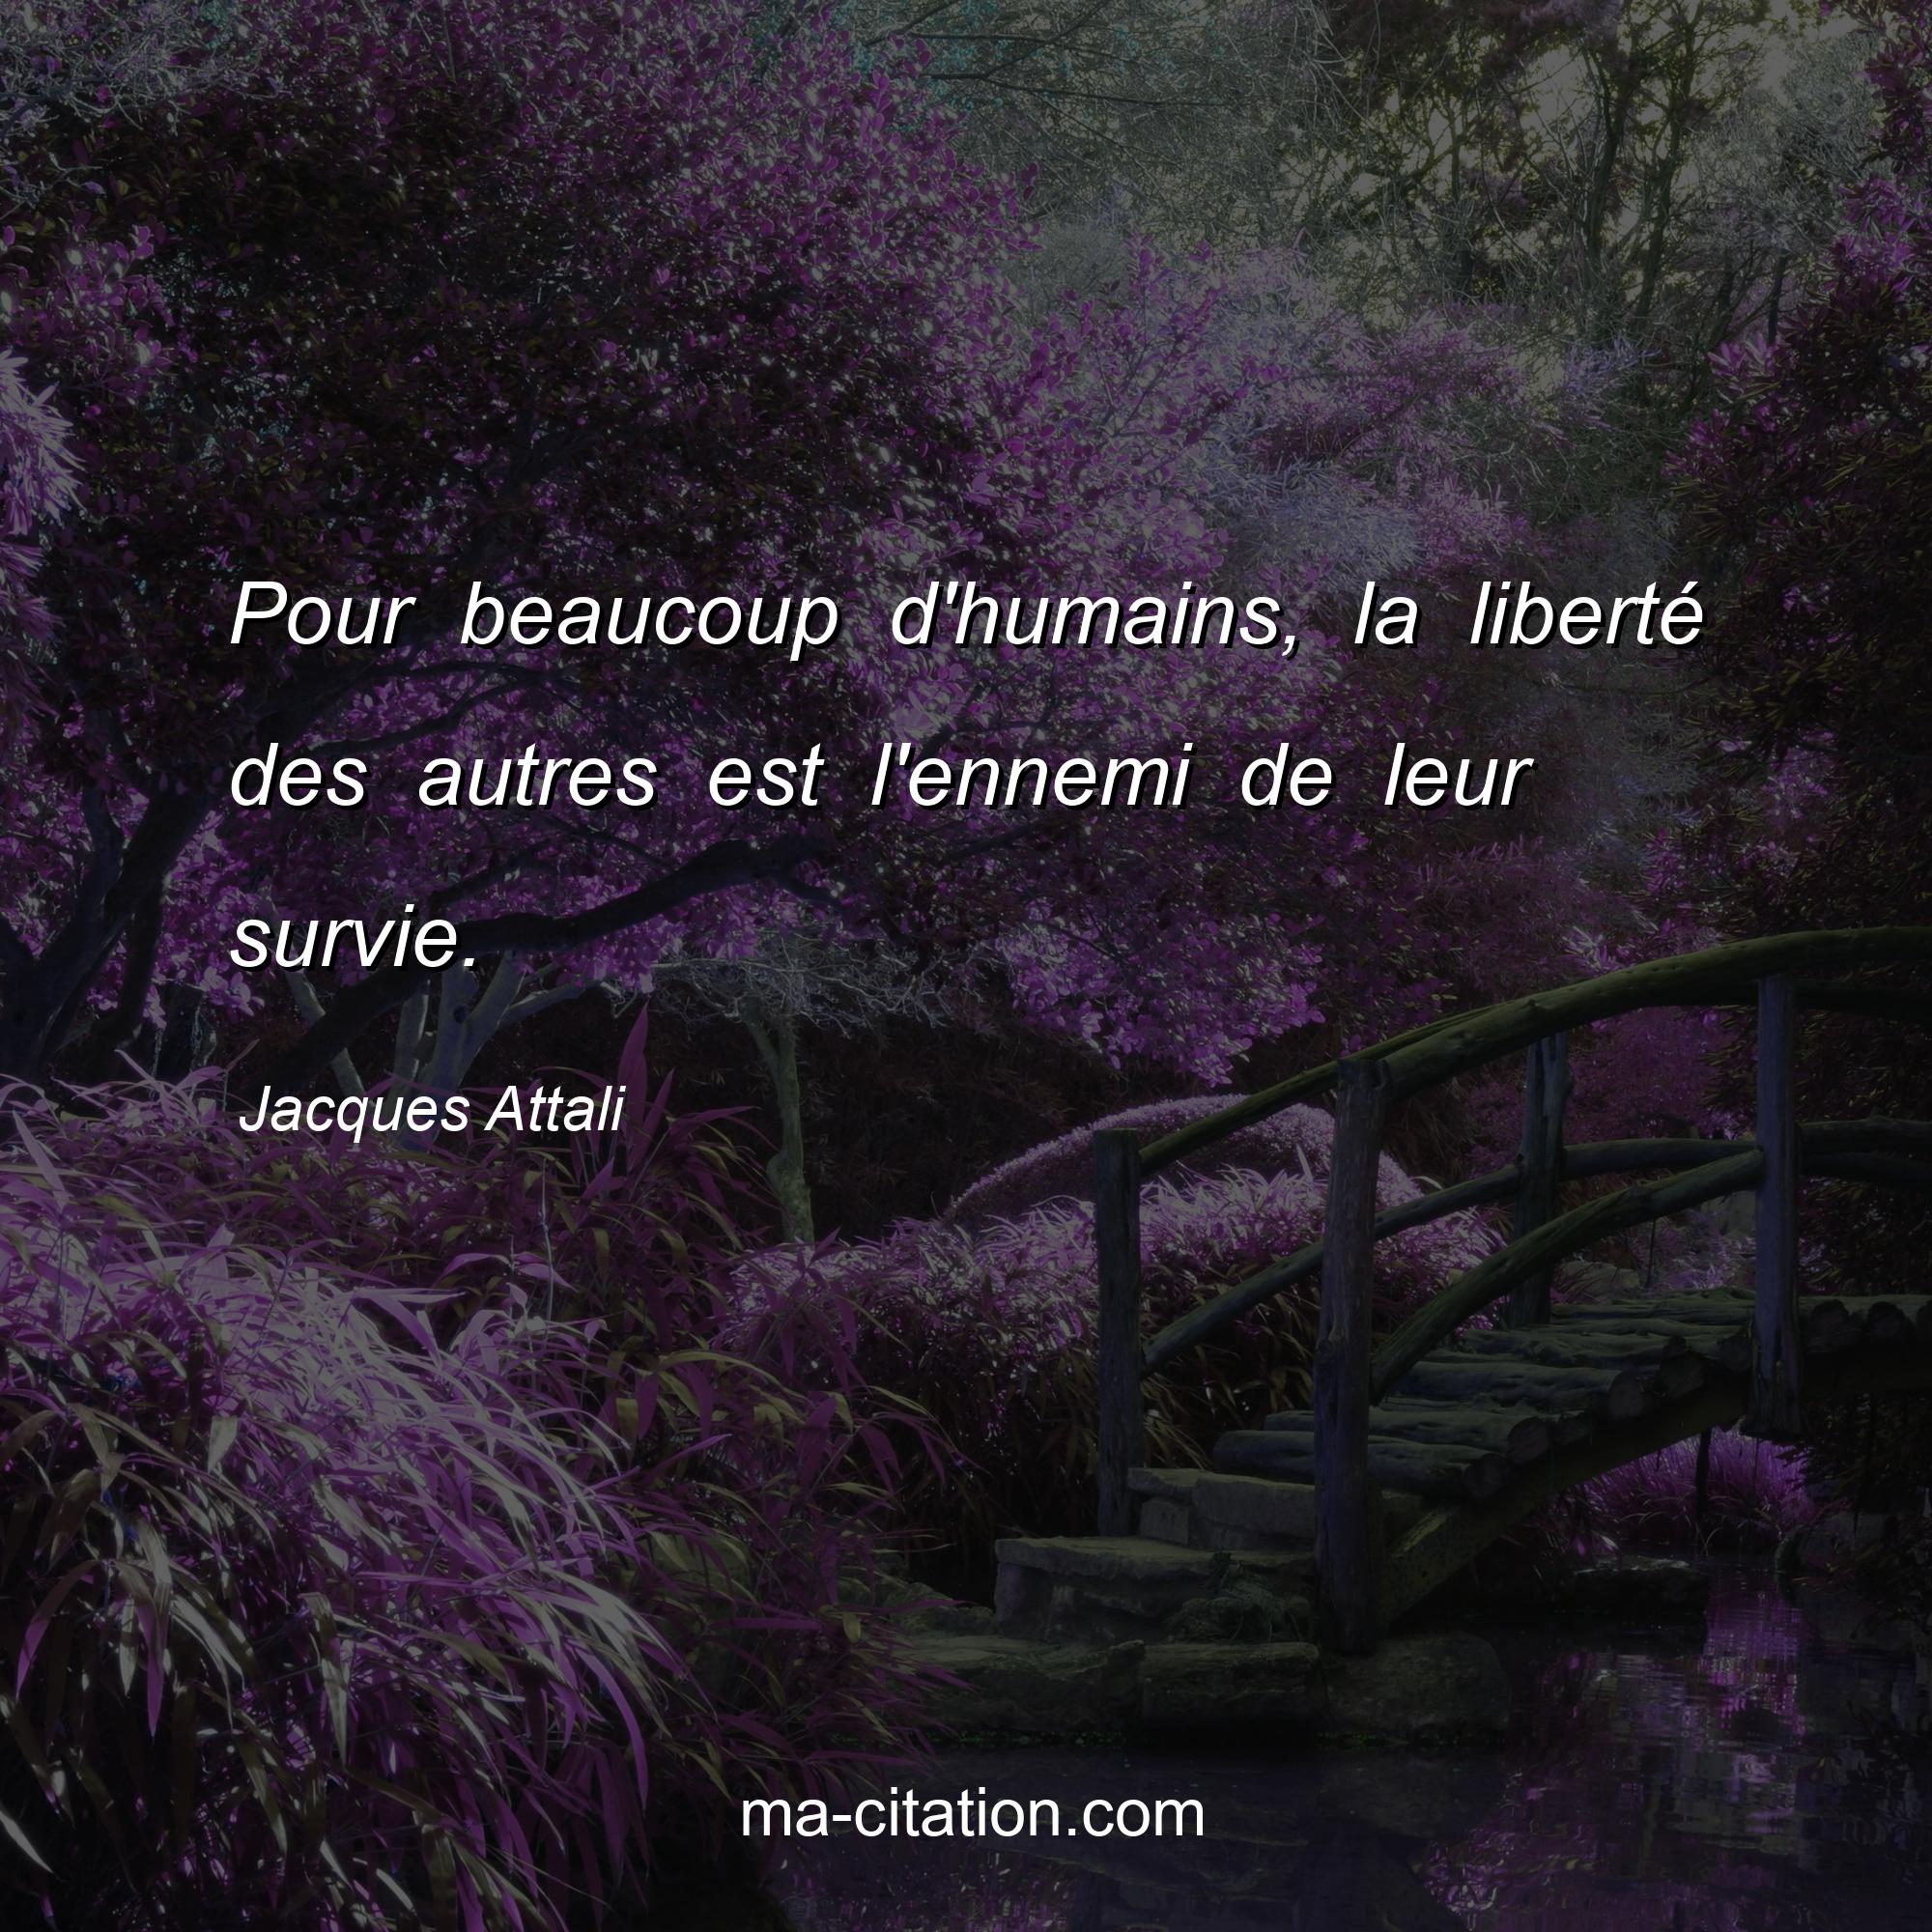 Jacques Attali : Pour beaucoup d'humains, la liberté des autres est l'ennemi de leur survie.